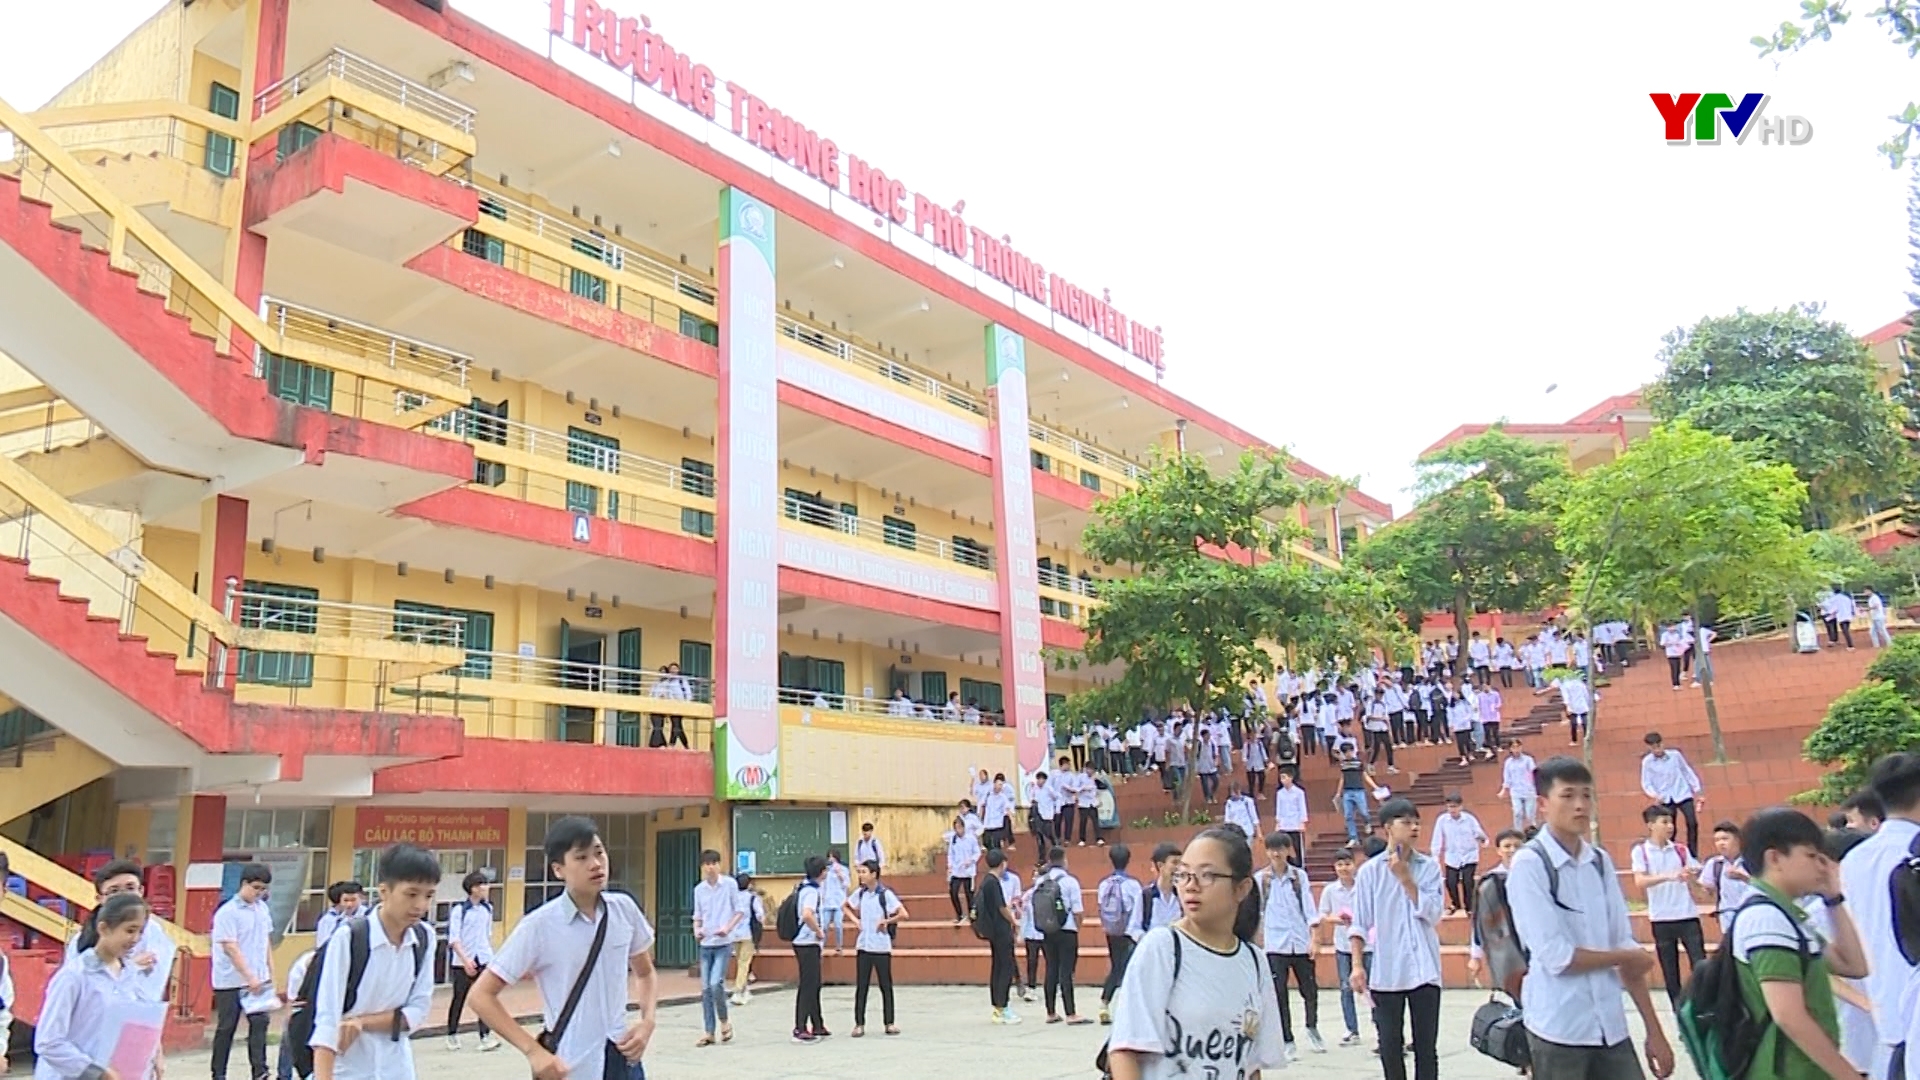 Hơn 8.100 thí sinh tỉnh Yên Bái tham gia Kỳ thi vào lớp 10 THPT năm học 2020 - 2021